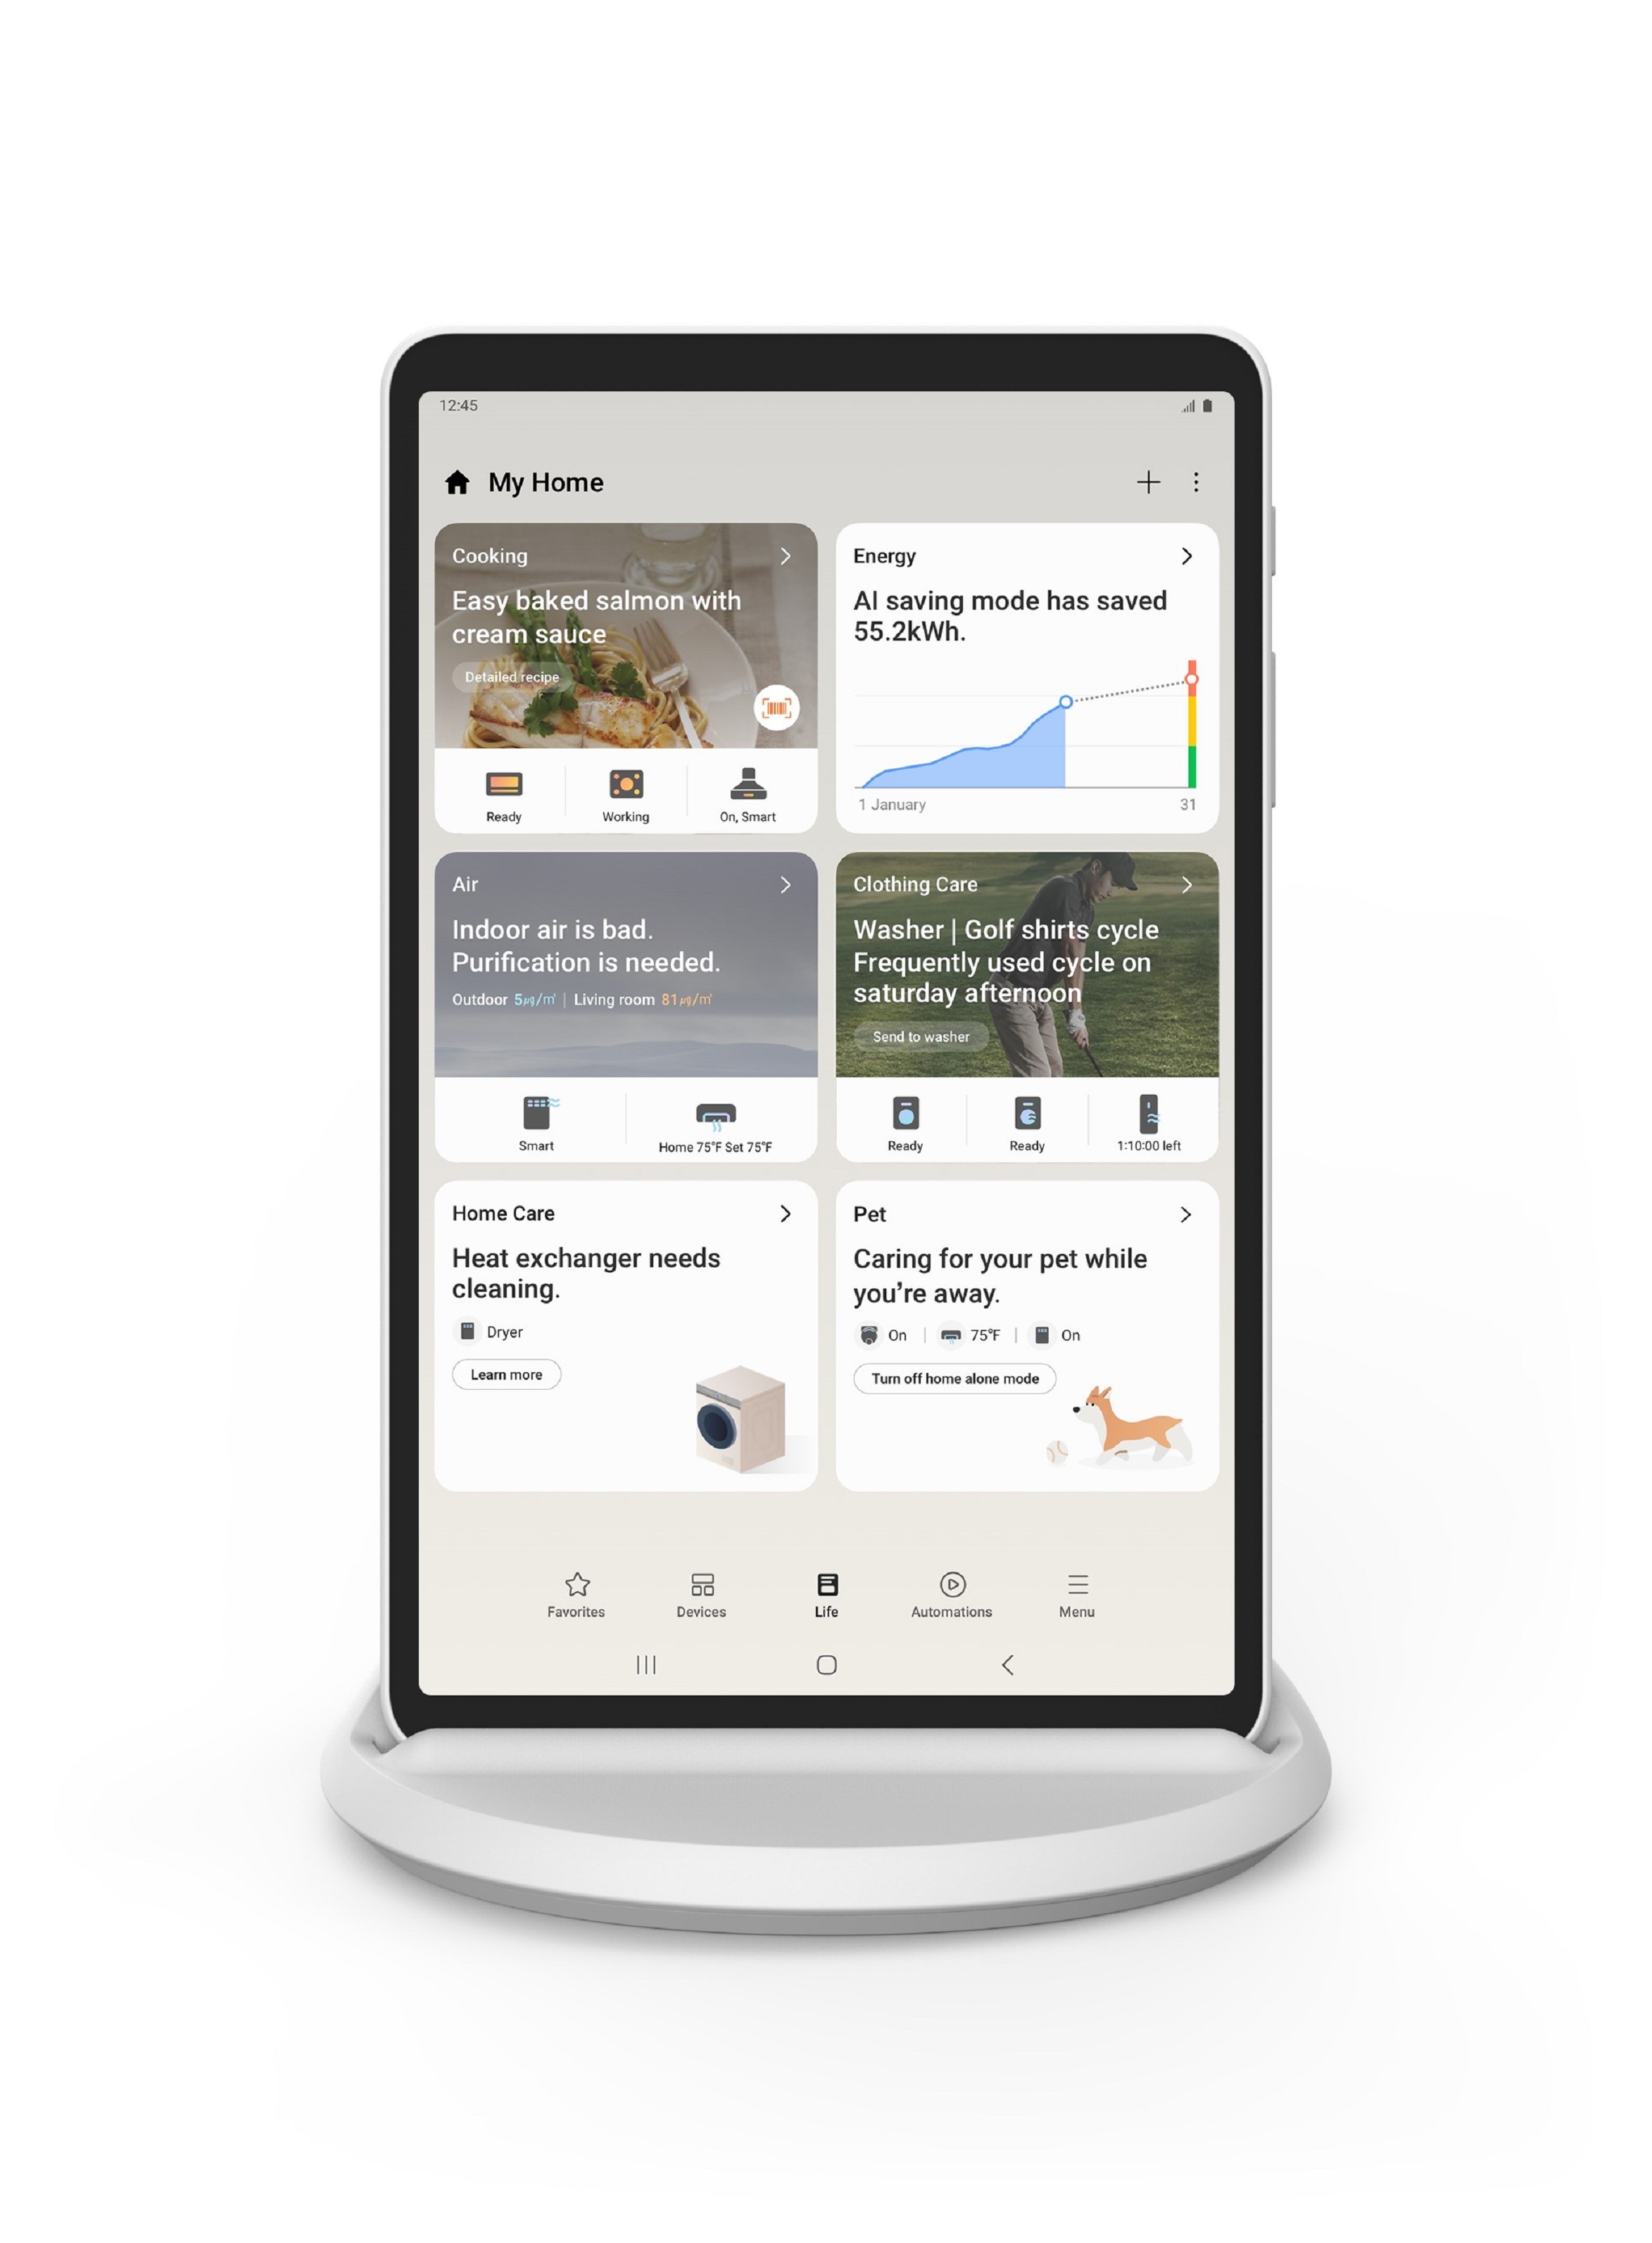 เปิดตัว Samsung Home Hub แพลตฟอร์มเดียวจัดการงานบ้านได้ภายในพริบตา โฮมโซลูชันในรูปแบบแท็บเล็ตหน้าจอสัมผัส ขับเคลื่อนด้วยเทคโนโลยี AI บนแอปพลิเคชัน SmartThings